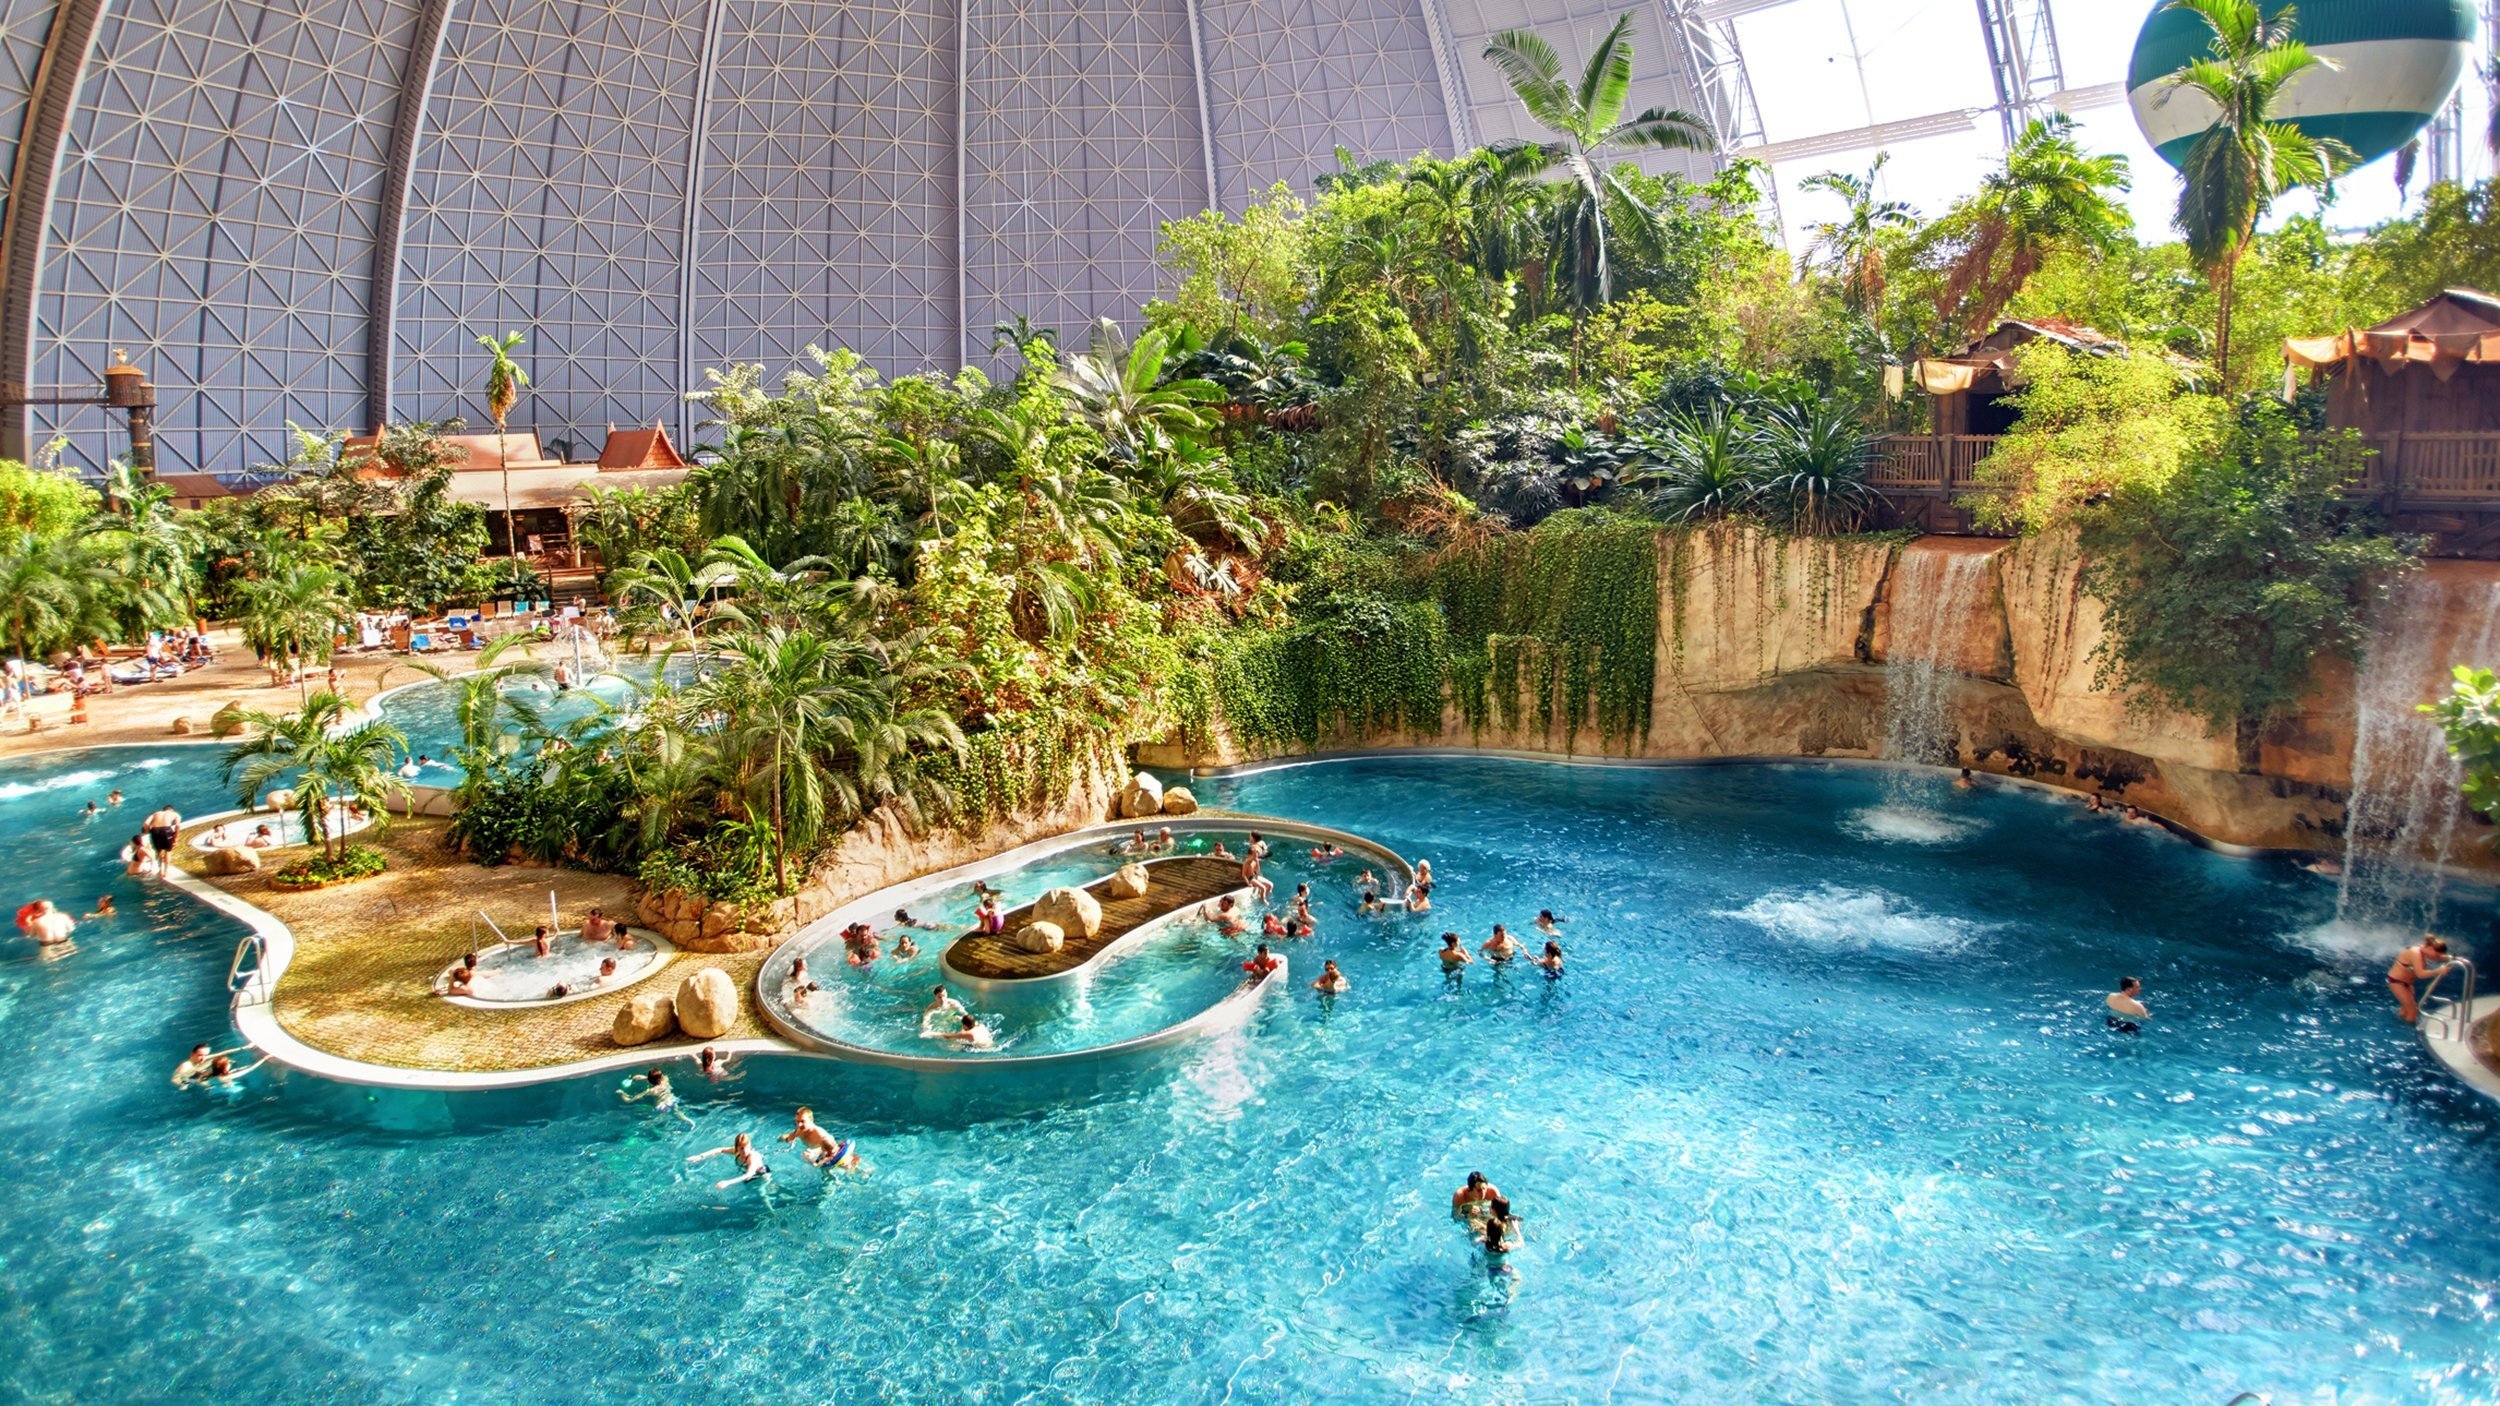 Новый аквапарк в москве с атмосферой тропических